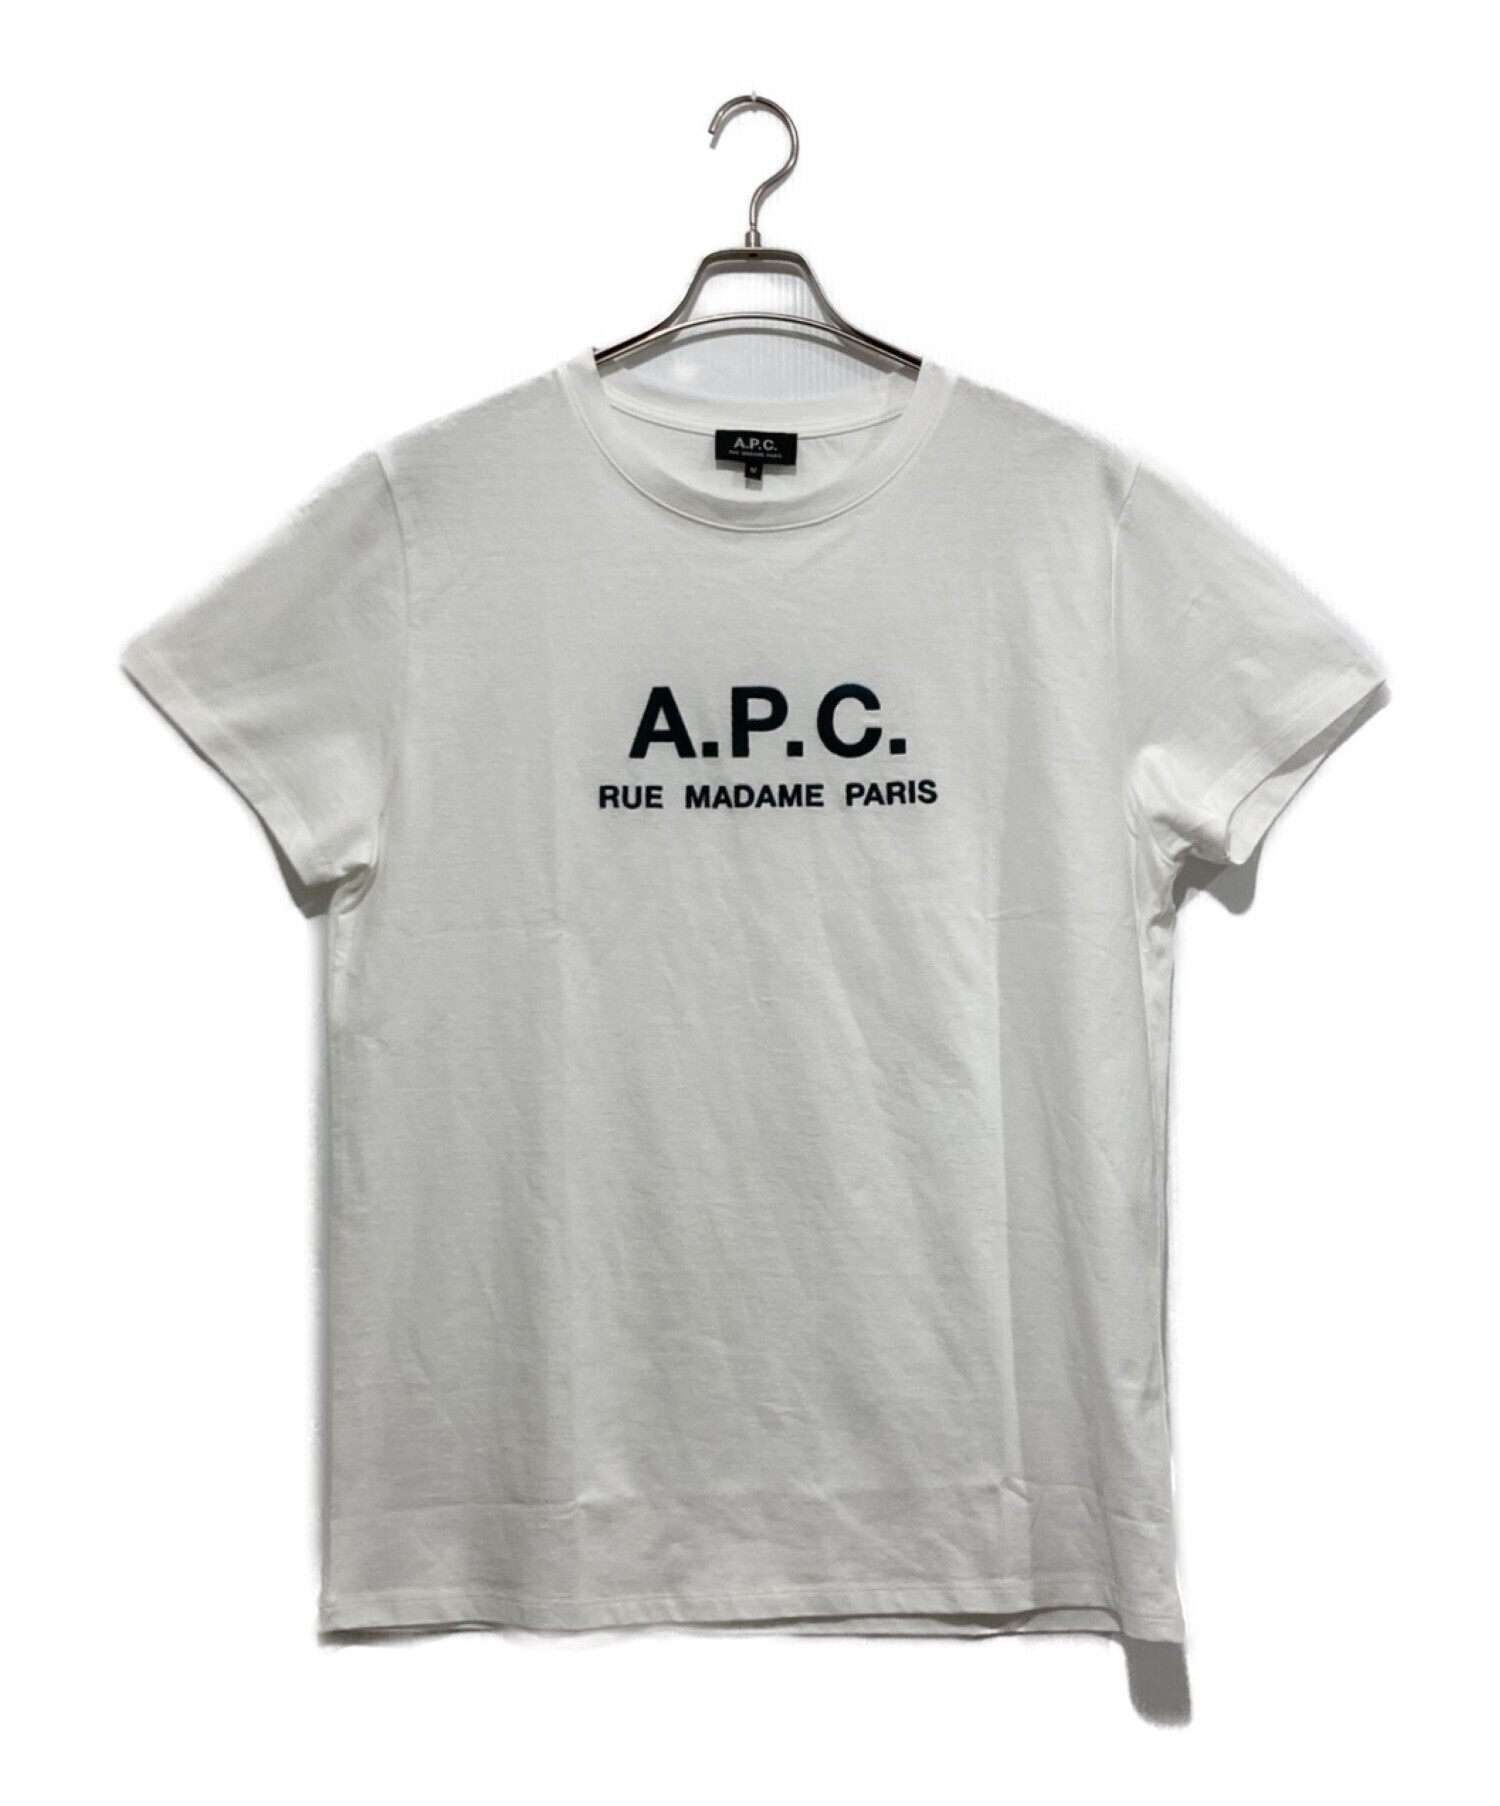 A.P.C. (アーペーセー) ロゴTシャツ ホワイト サイズ:M